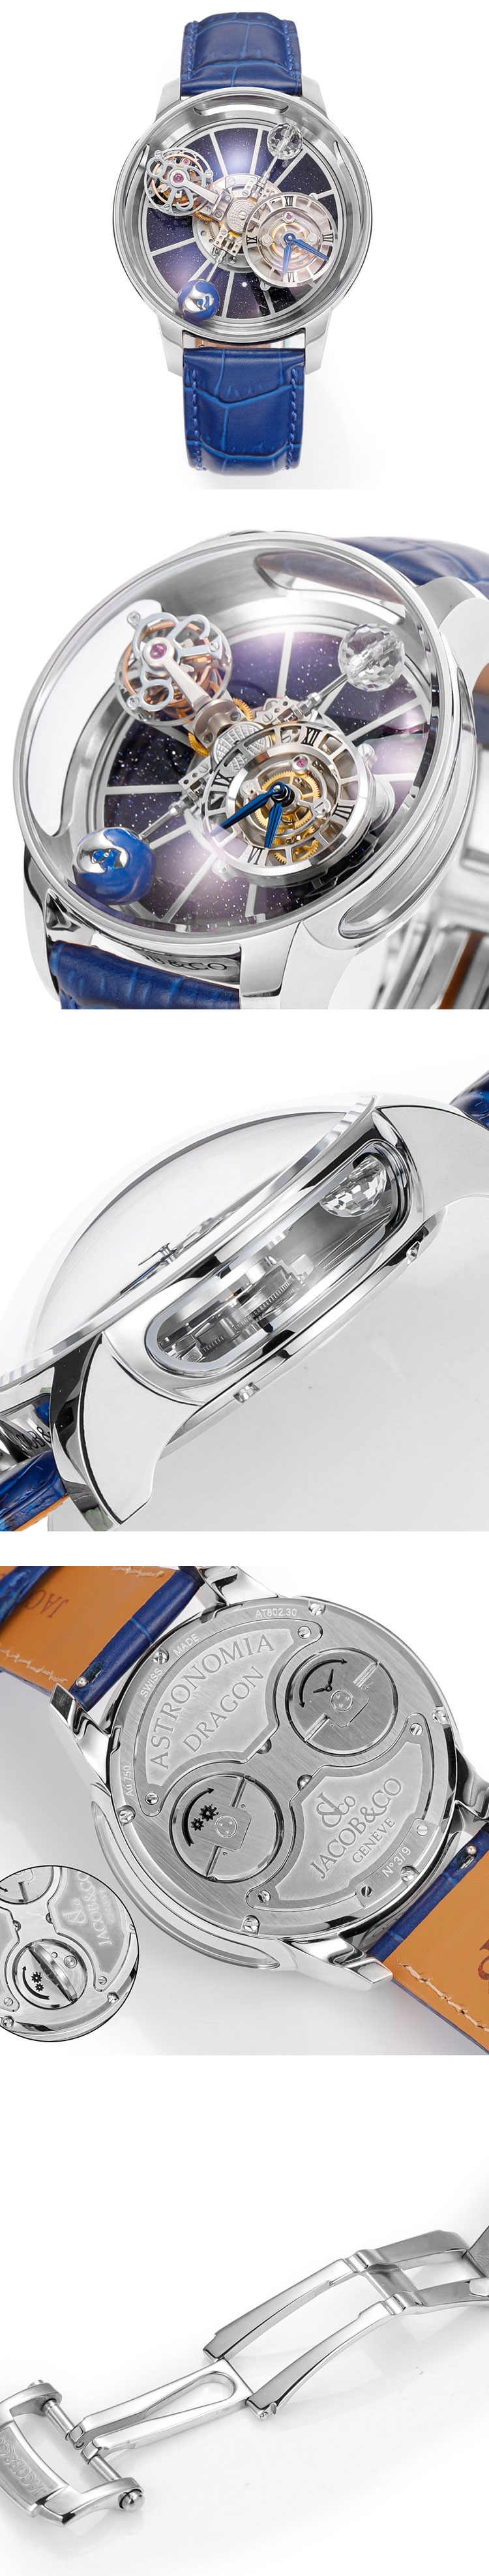 販促活動中 希少ジェイコブコピー時計 アストロノミア トゥールビヨン 品質2年無料保証